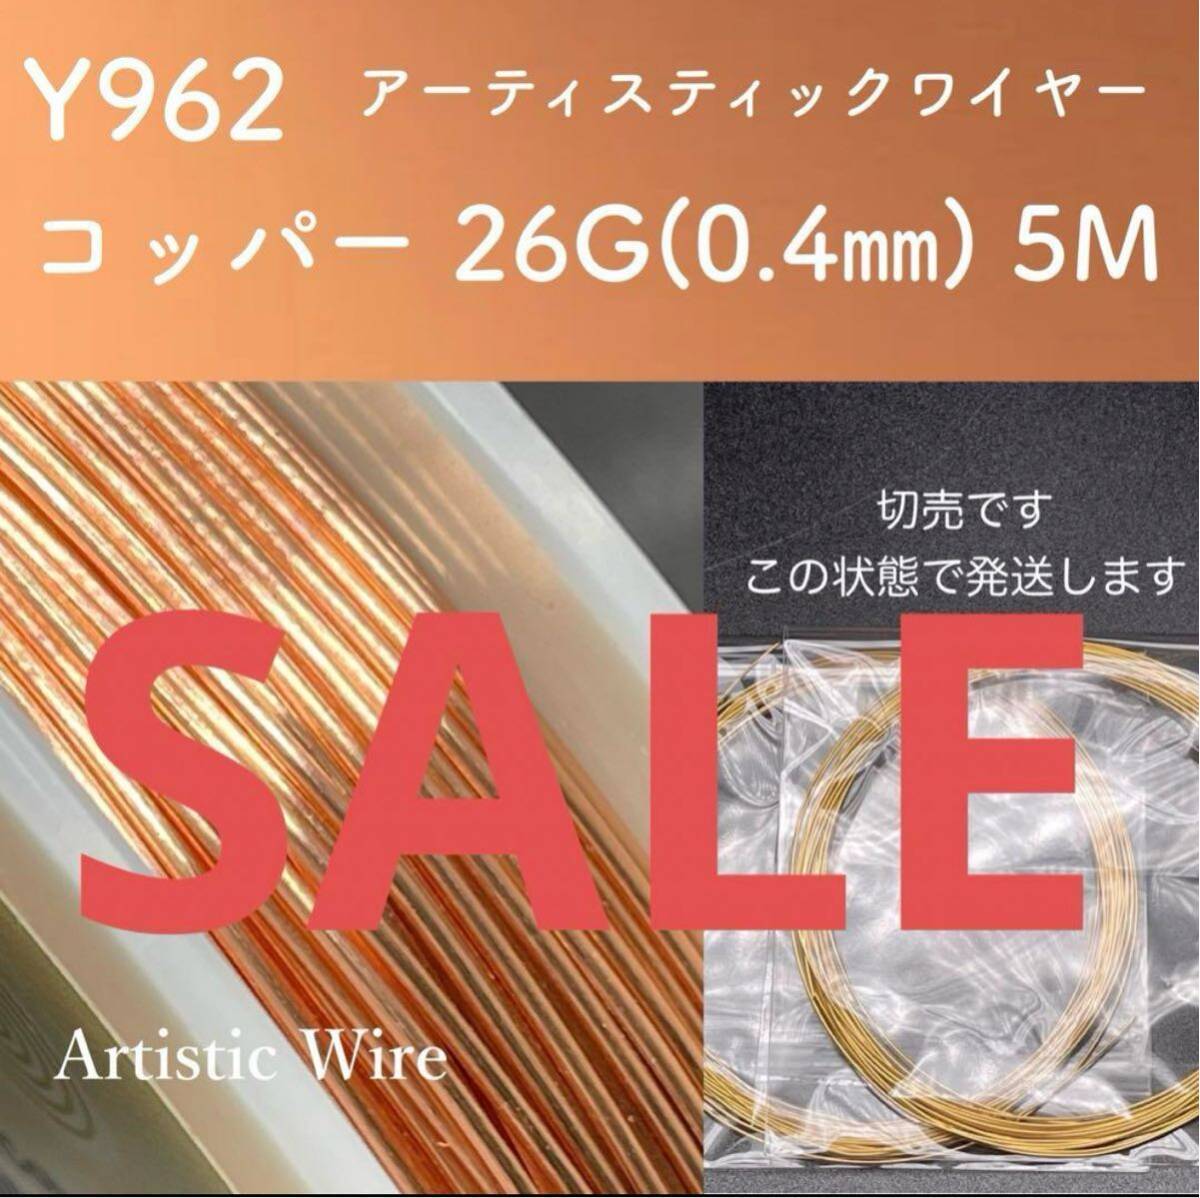 SALE 厳選 Y962 コッパー 26G (0.4㎜) 5M アーティスティックワイヤー 手芸用 ワイヤー 銅線の画像1